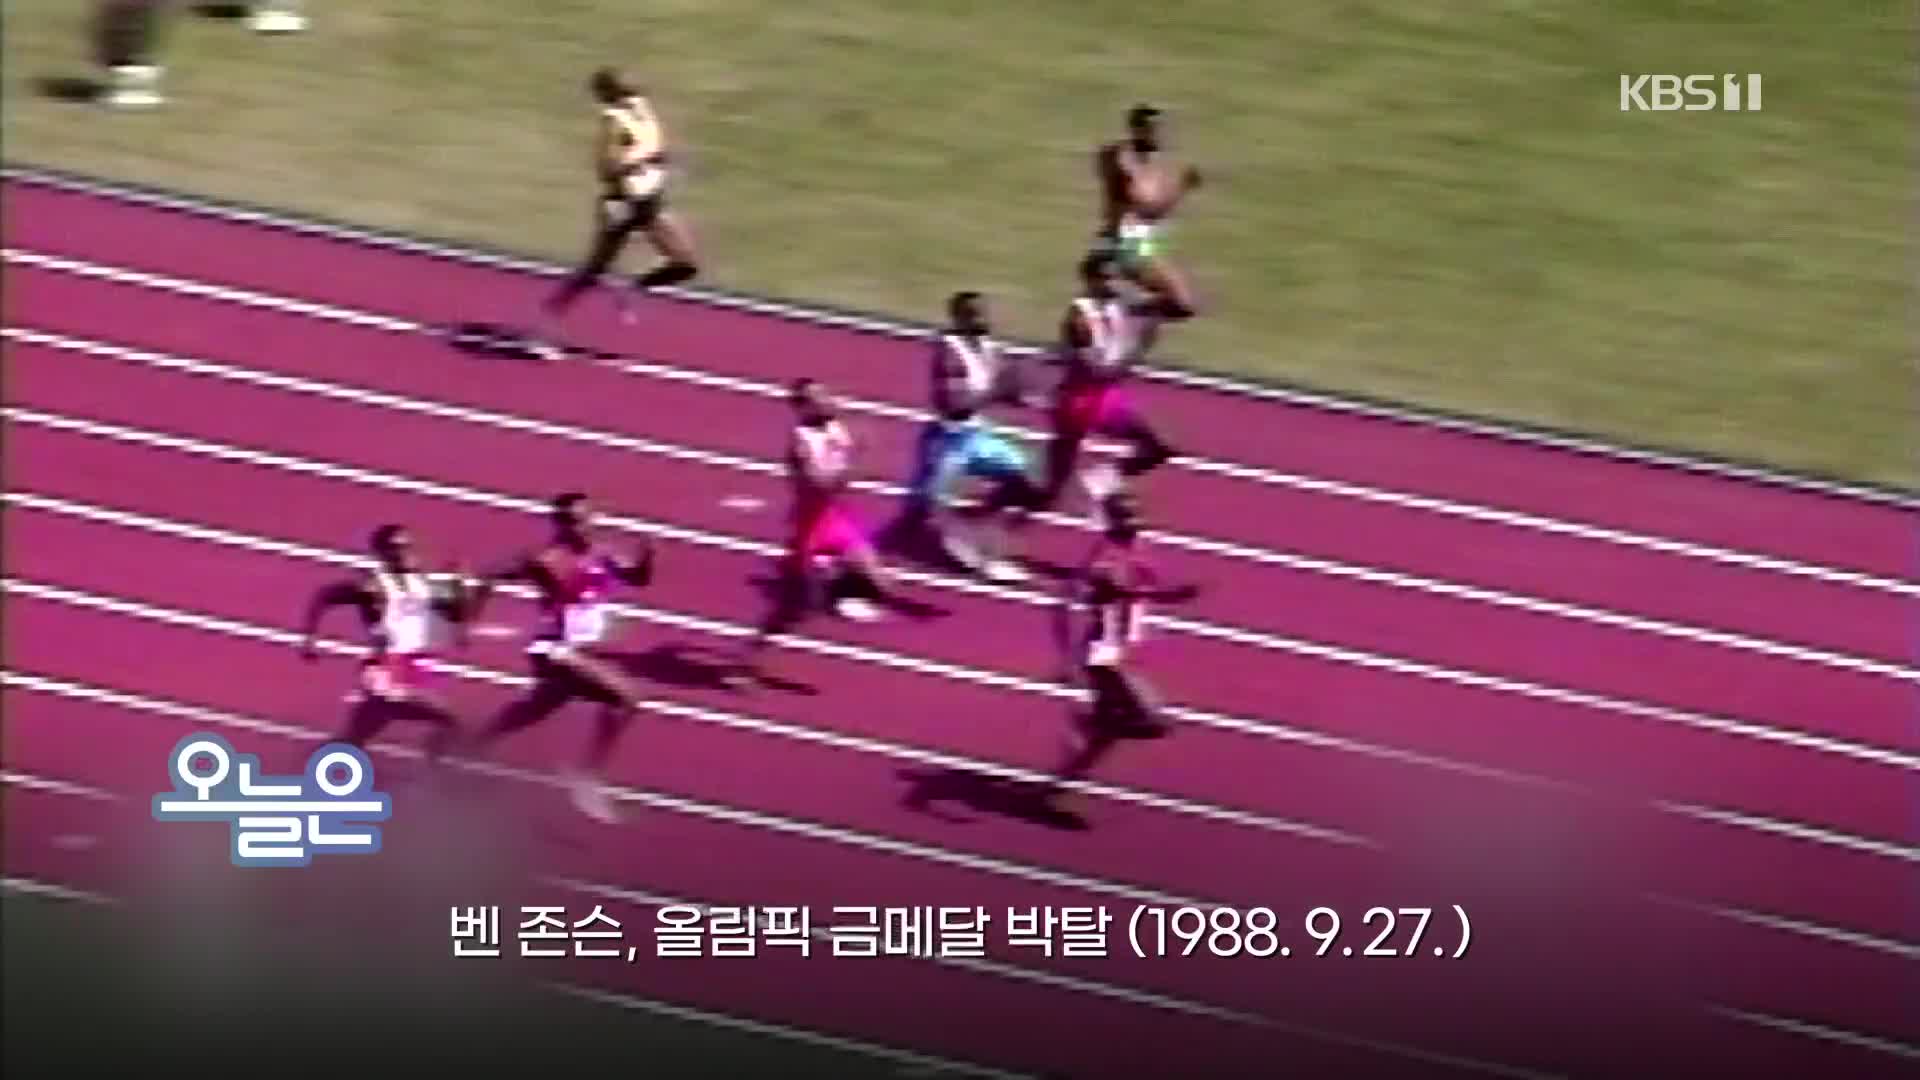 [오늘은] 벤 존슨, 올림픽 금메달 박탈 (1988.9.27.)